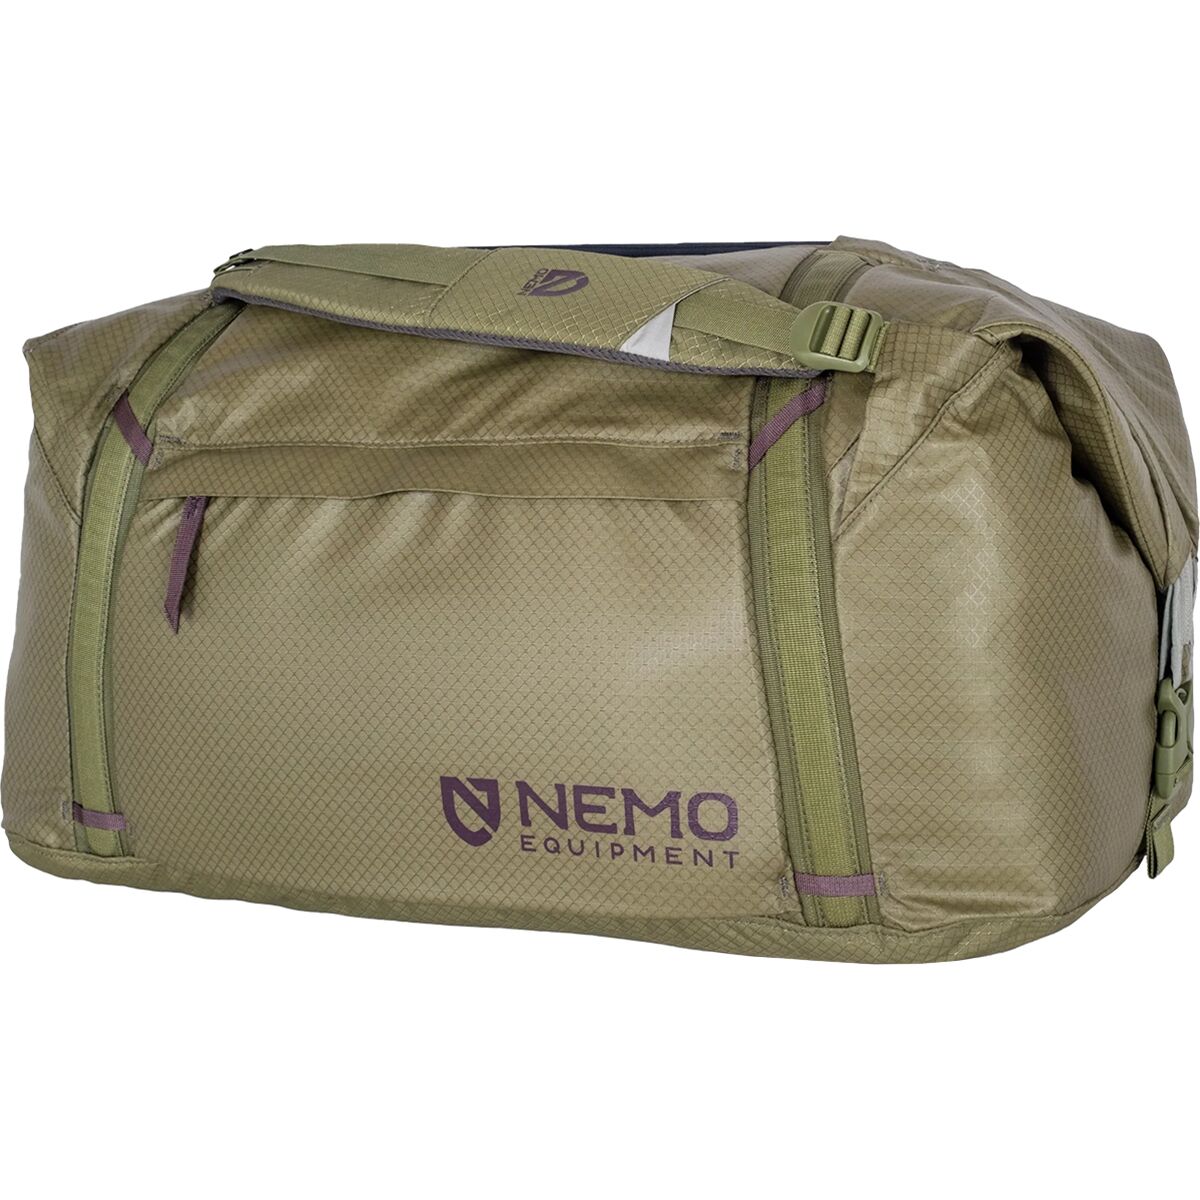 цена Двойная трансформируемая спортивная сумка объемом 70 л Nemo Equipment Inc., цвет nova